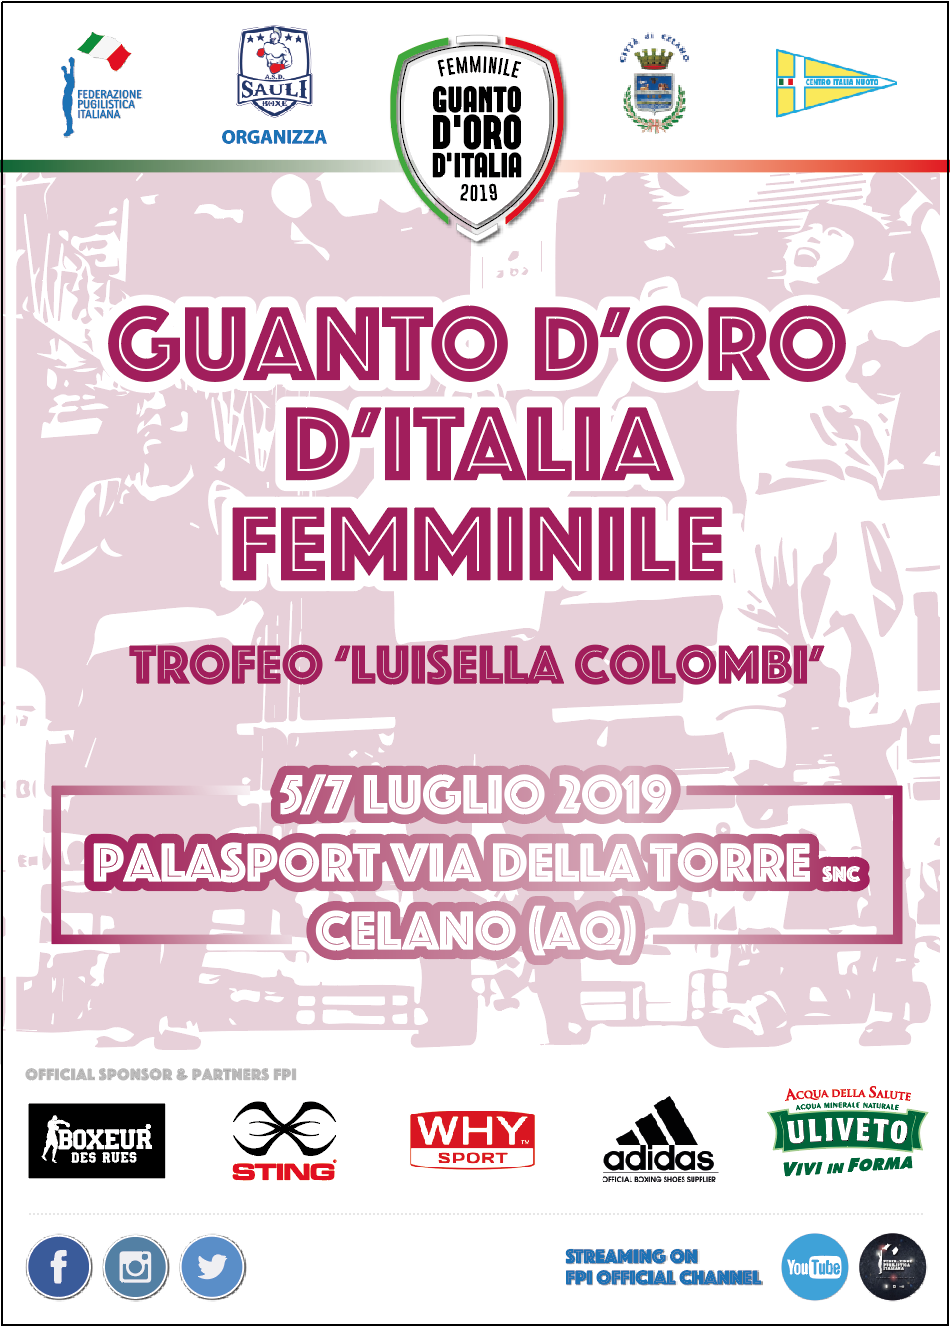 Guanto D'Oro Femminile - Trofeo Colombi 2019: Celano (AQ) 5-7 Luglio - DOMANI LA PRESENTAZIONE  #GuantoF19